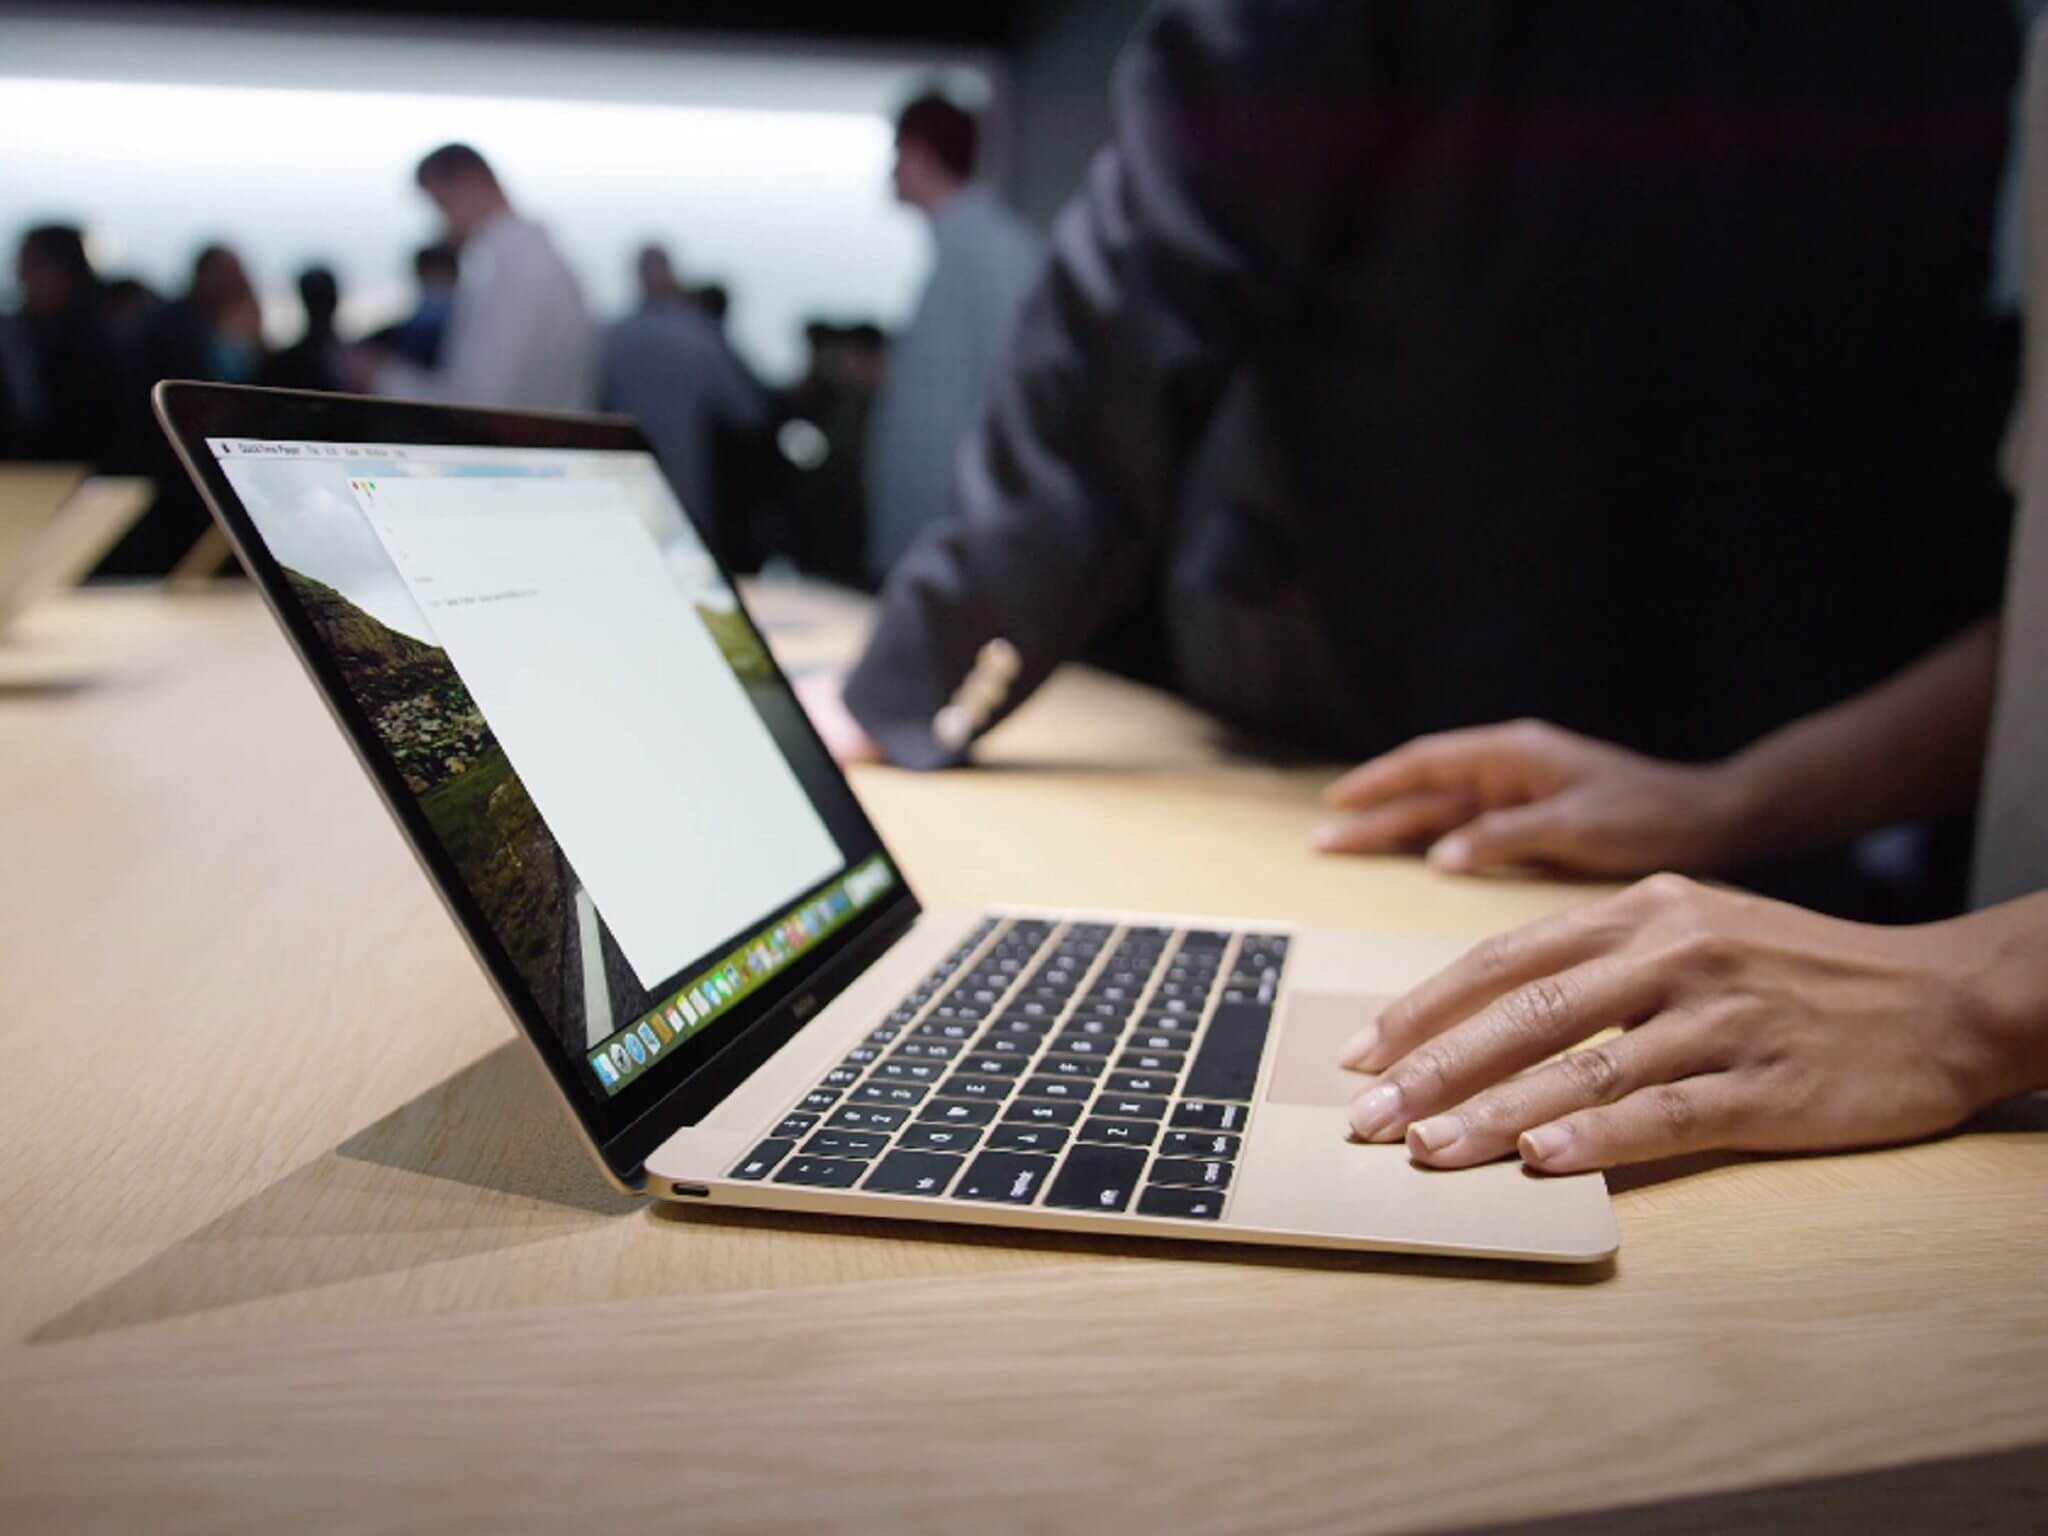 Novo macbook 2015 no consertos. Com